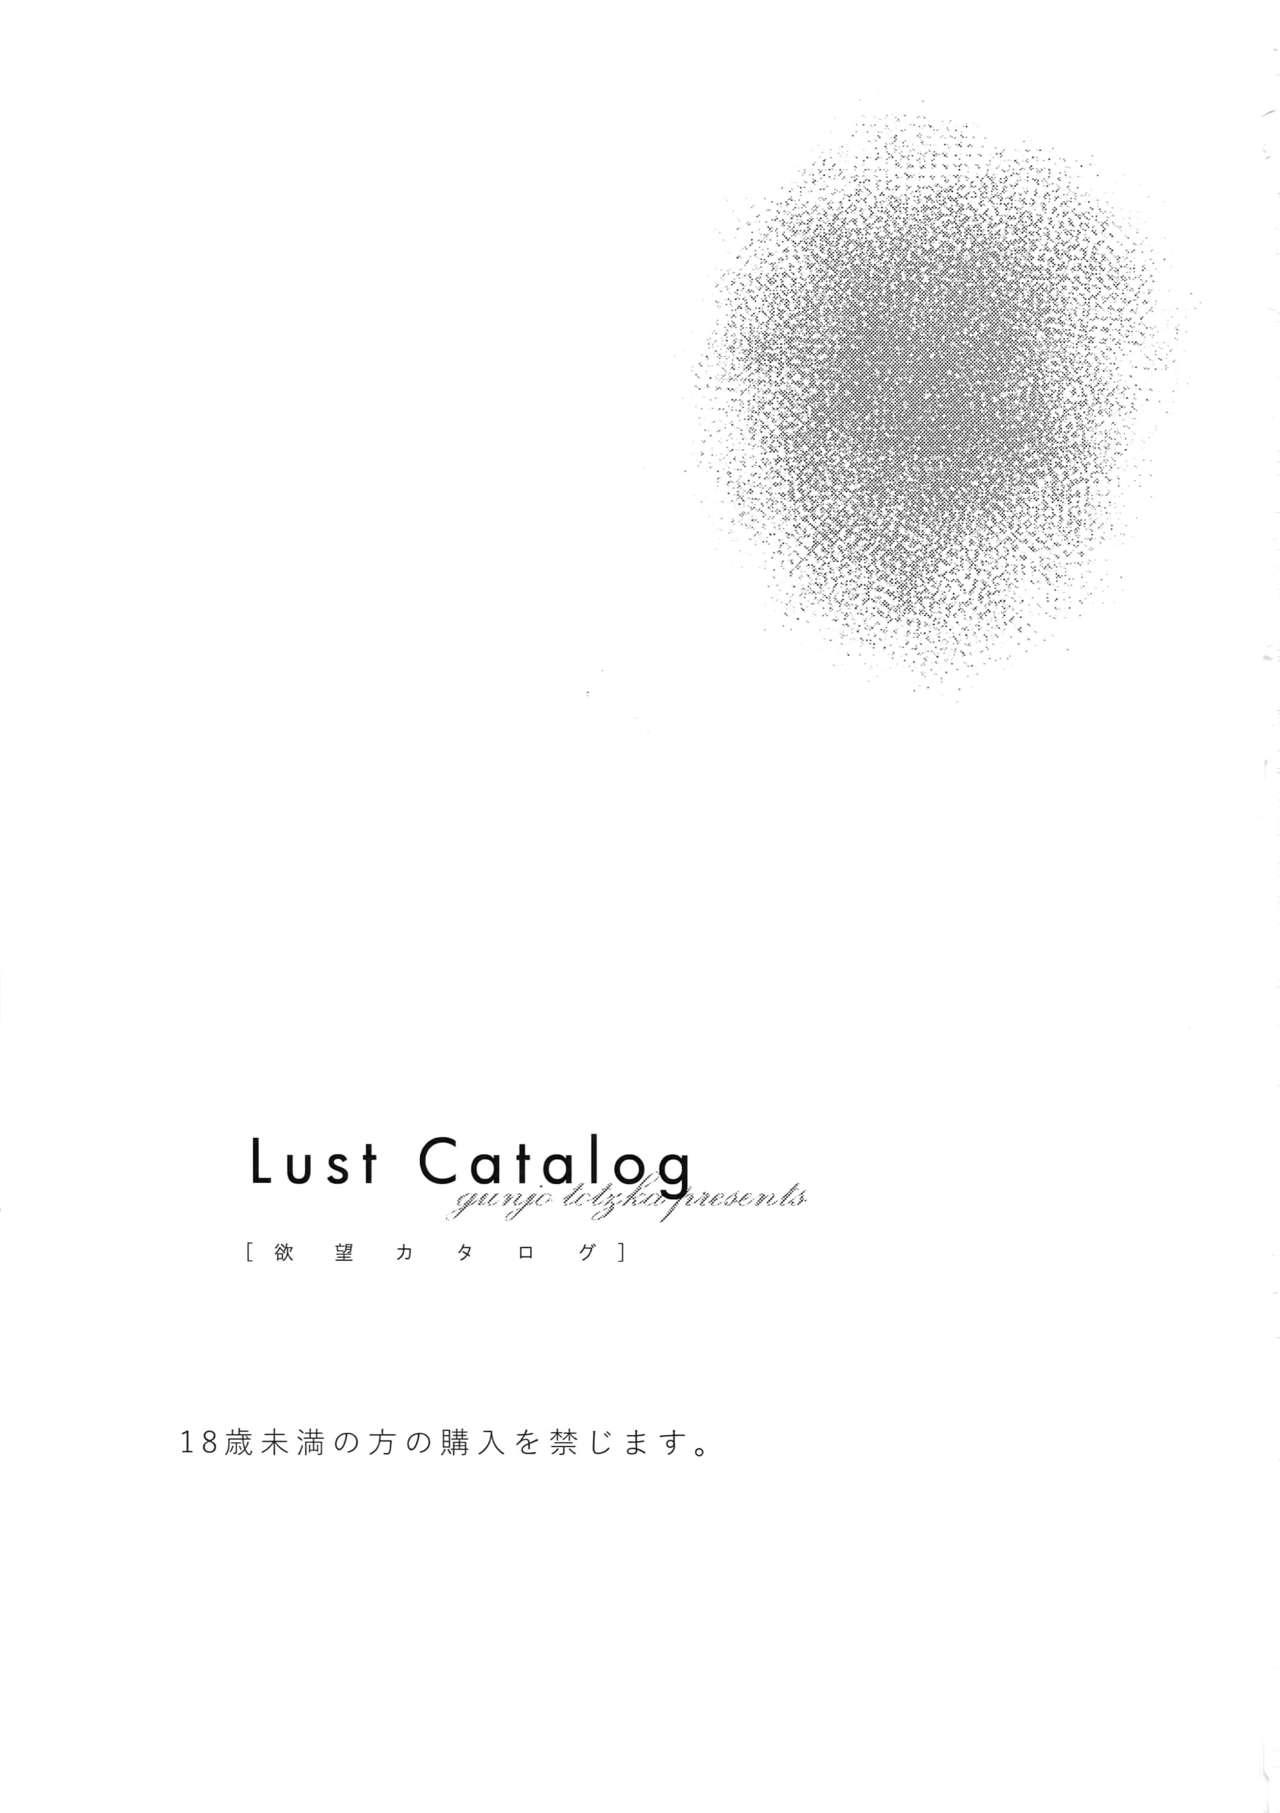 Yokubou Catalog - Lust Catalog 1